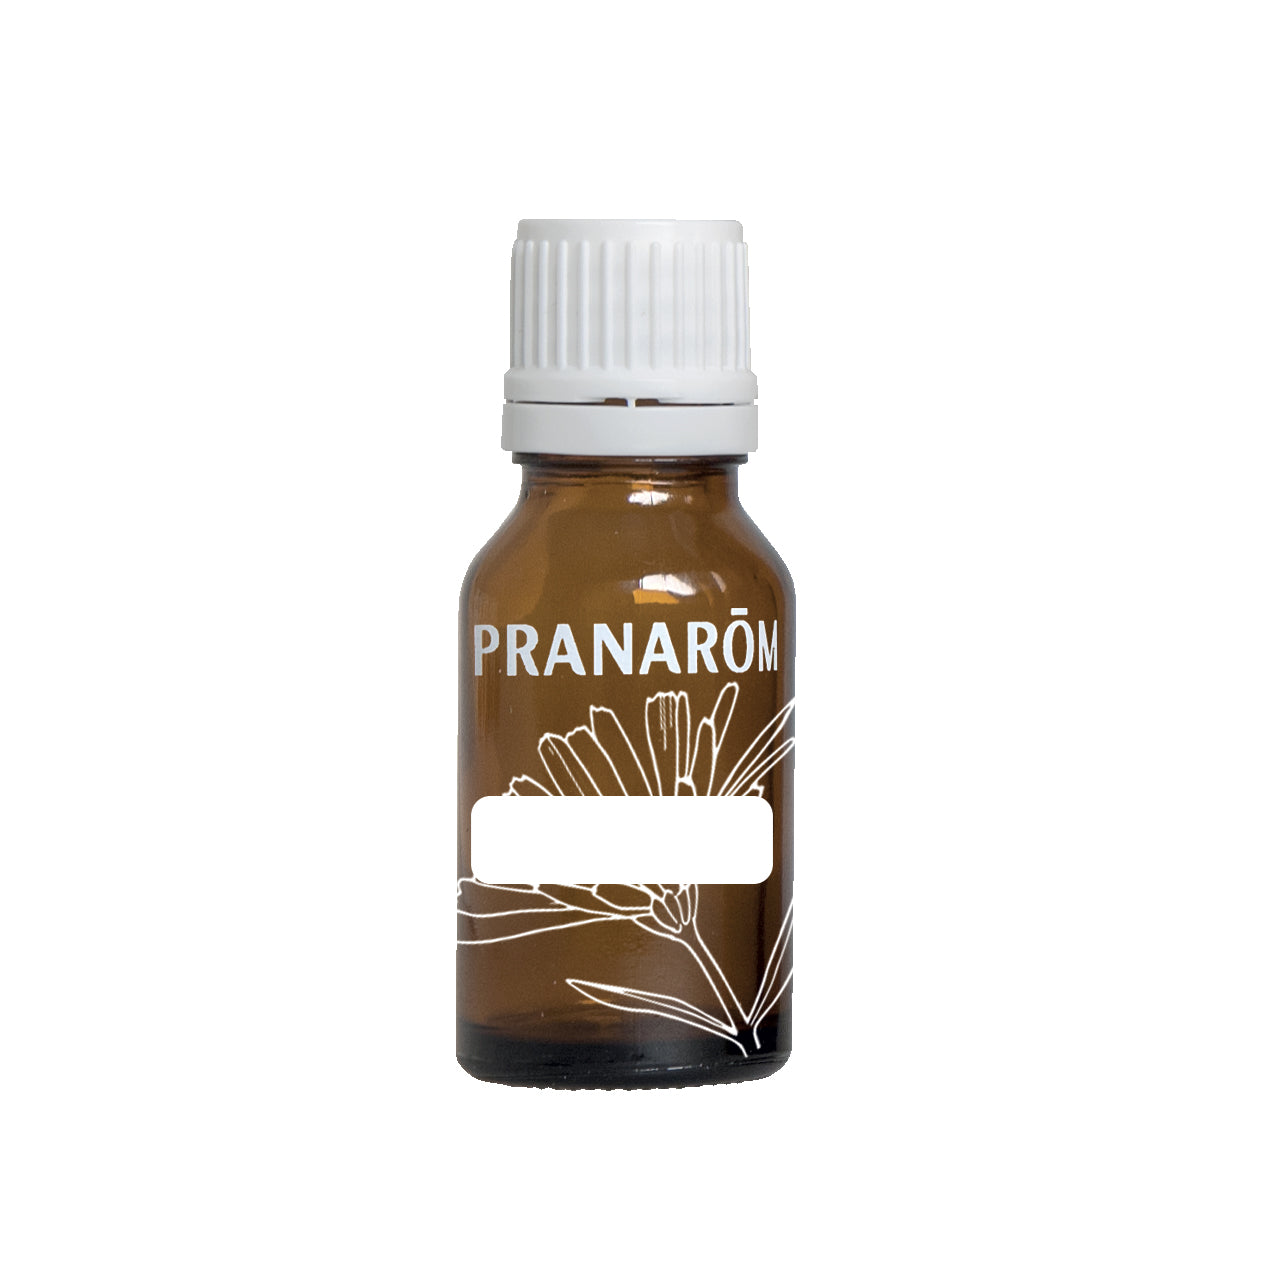 Pranarôm Aromaself Flacon Spray Vide, 30 ml